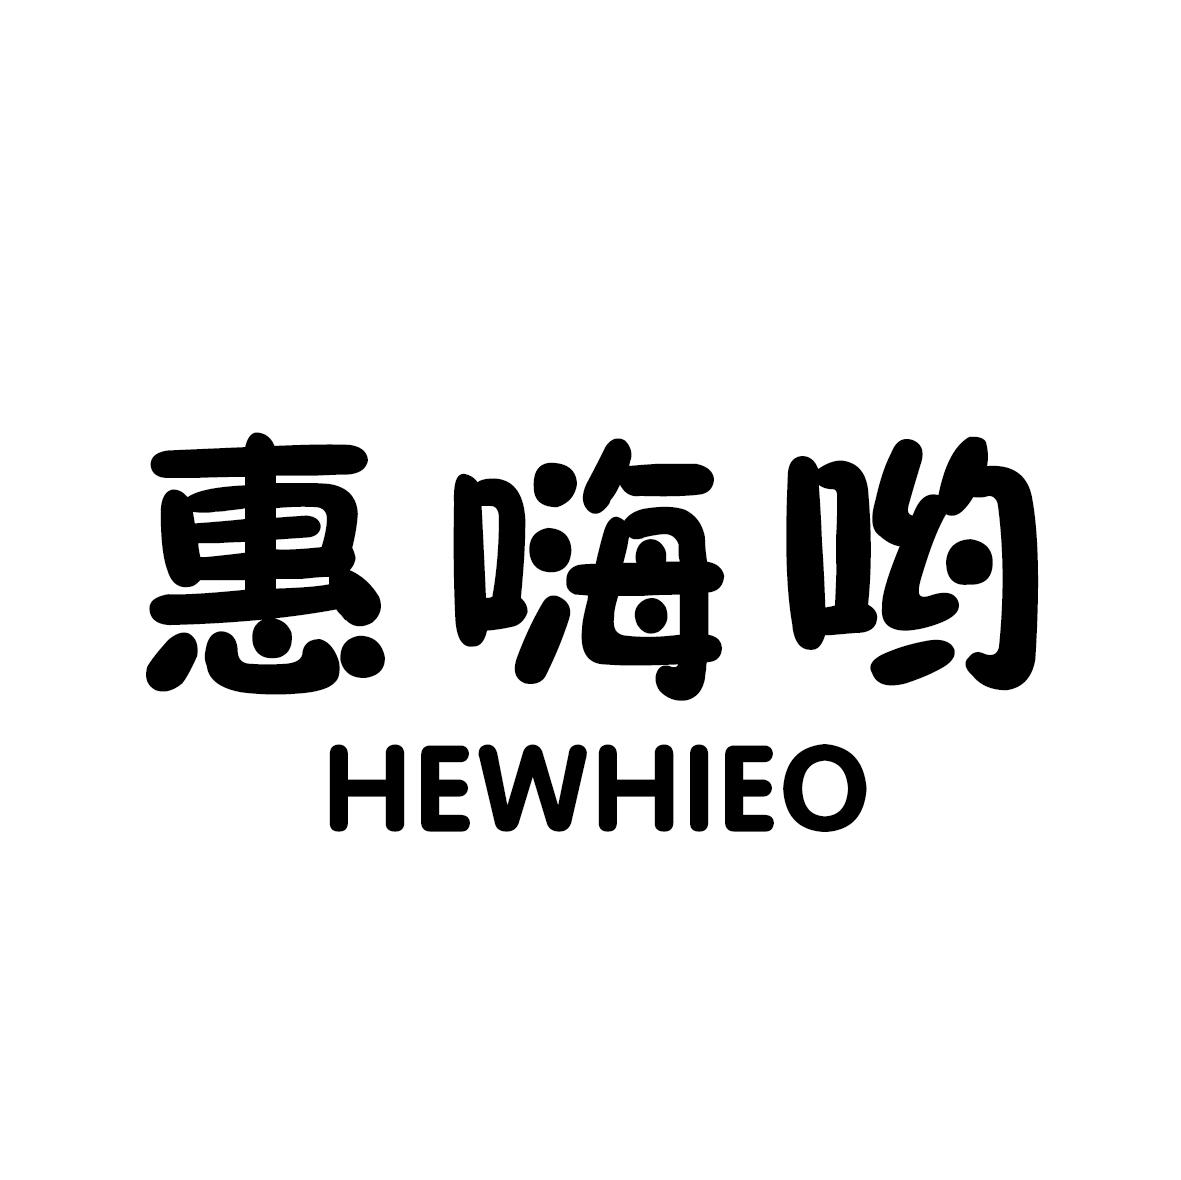 惠嗨哟 HEWHIEO